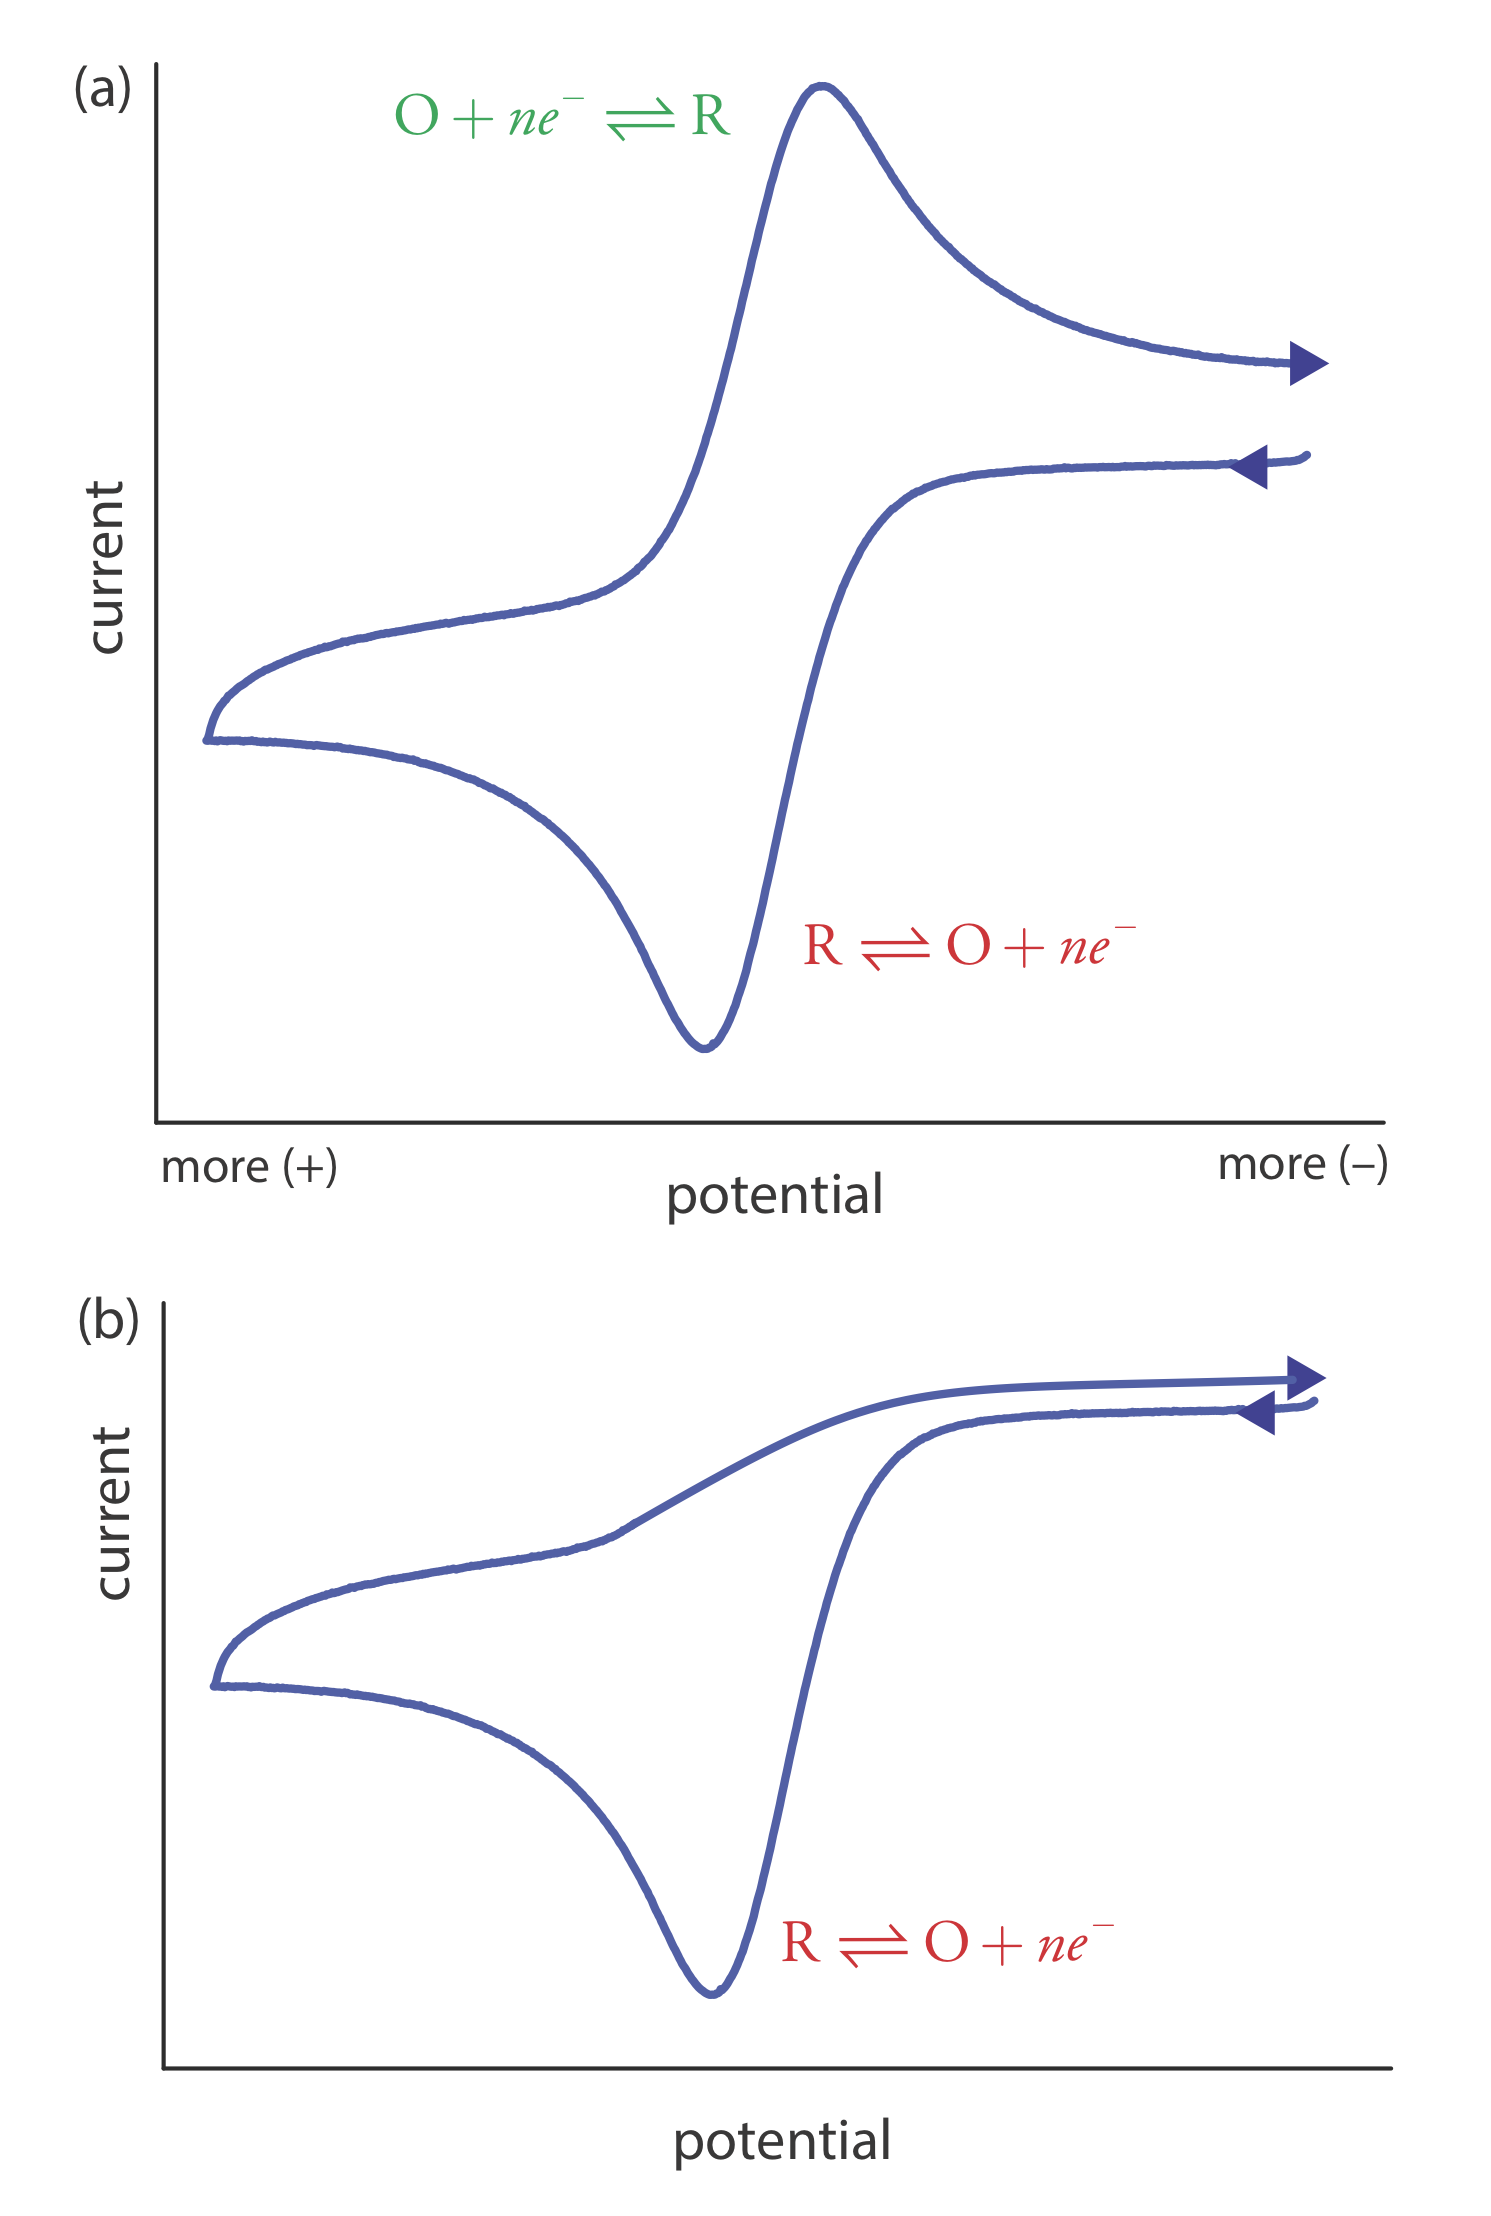 Voltamogramas cíclicos para R obtenidos a (a) una velocidad de exploración más rápida y a (b) una velocidad de exploración más lenta. Uno de los principales usos de la voltametría cíclica es estudiar el comportamiento químico y electroquímico de los compuestos.